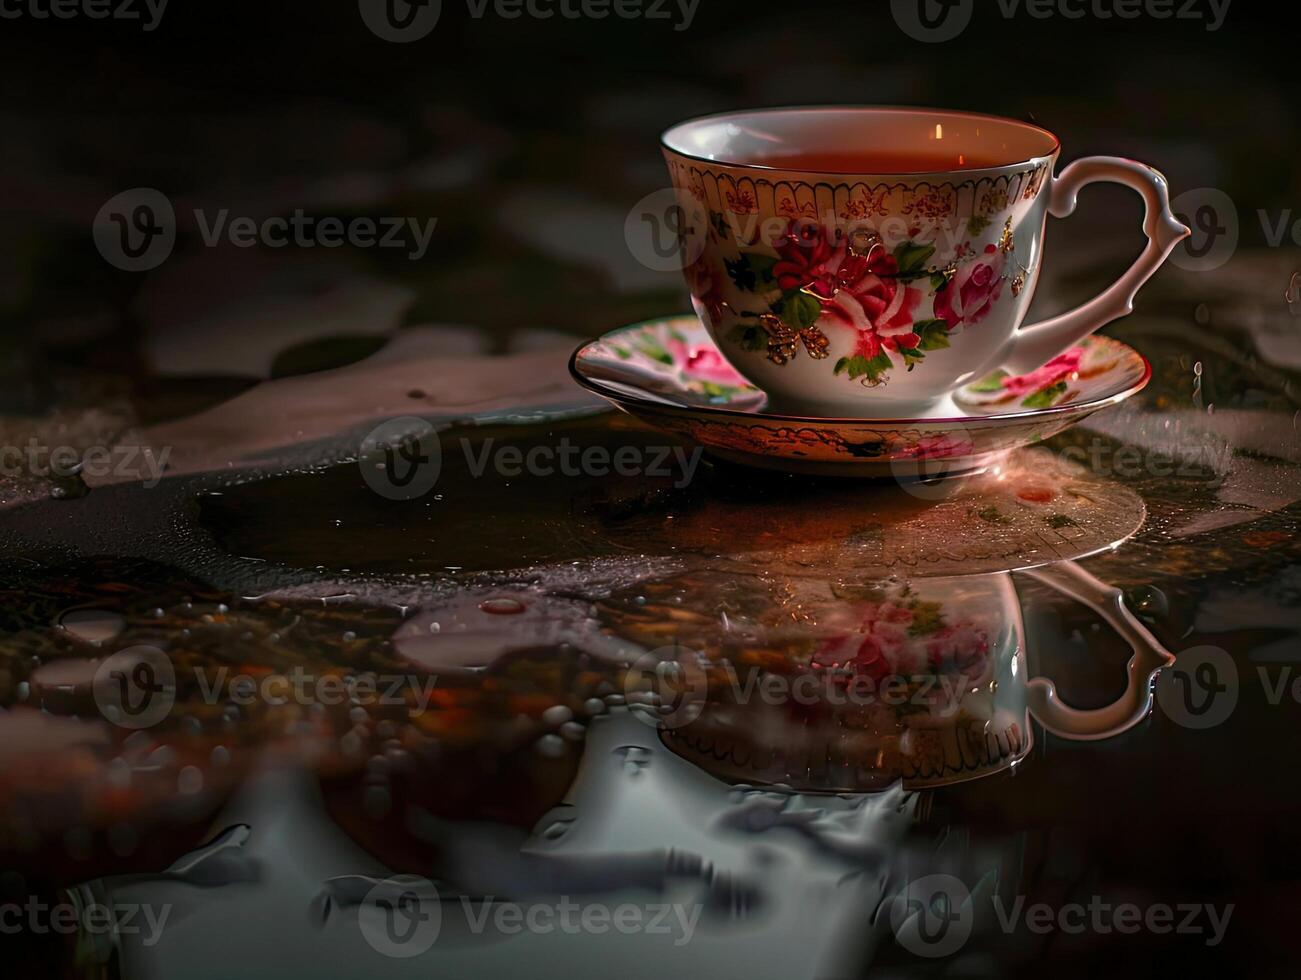 vapor chá copo em úmido superfície foto